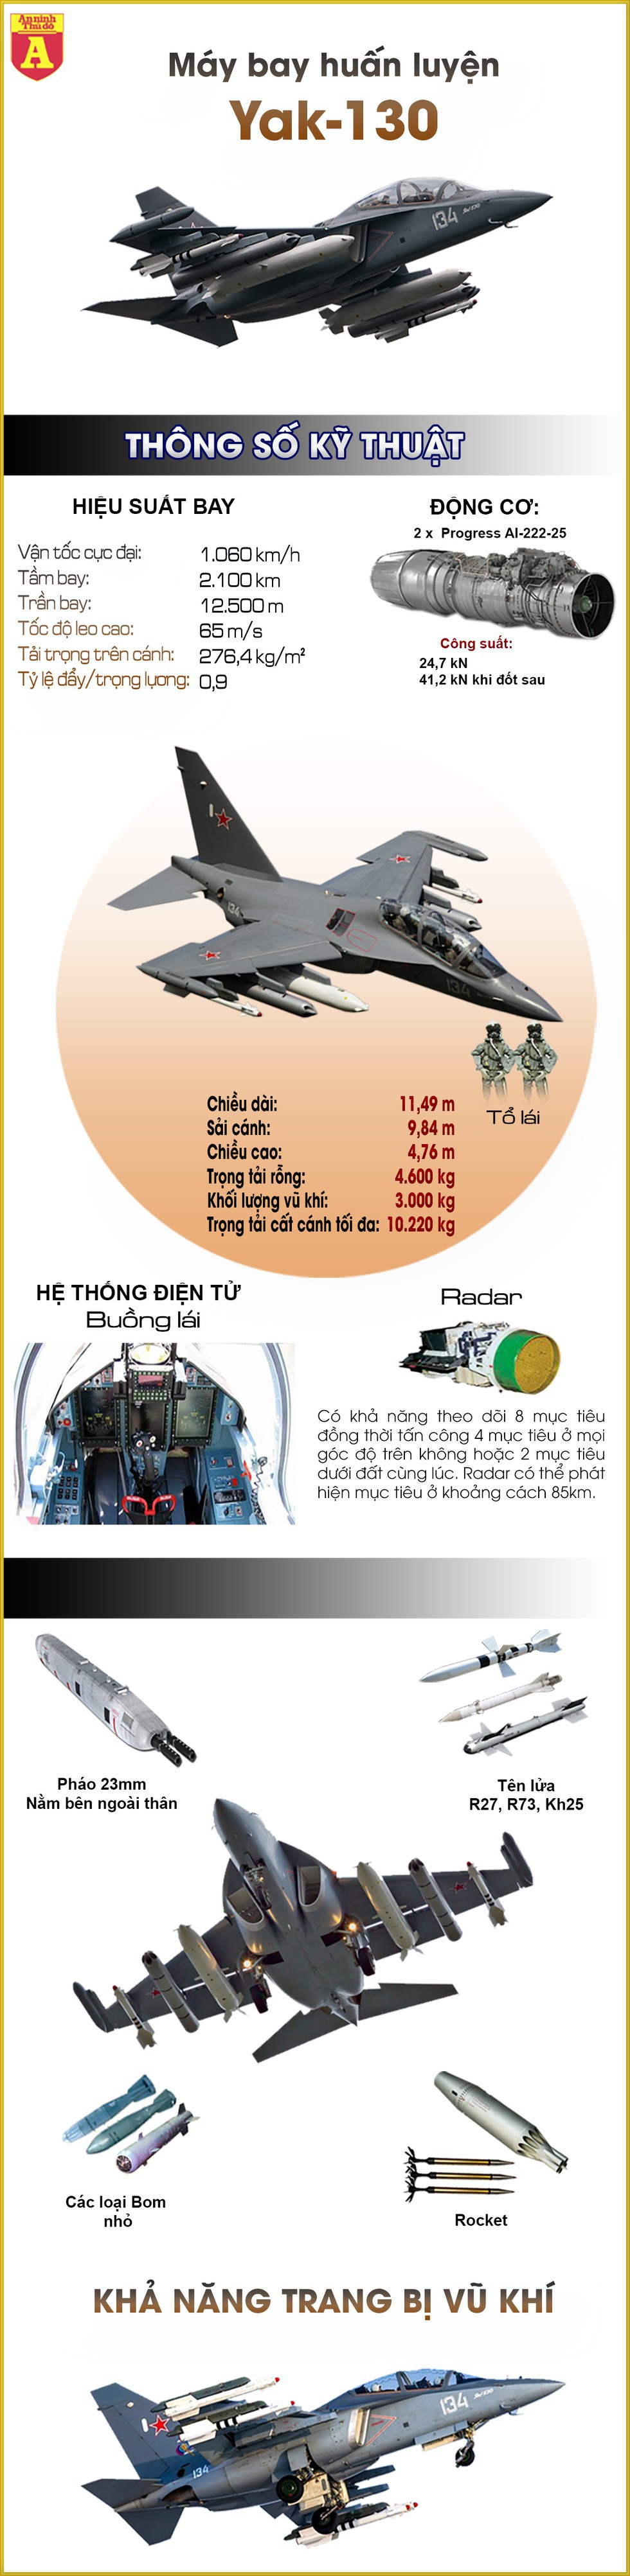 [Infographics] Yak-130 Nga sản xuất lần đầu tiên phóng rocket trong thực chiến tại Đông Nam Á - Ảnh 1